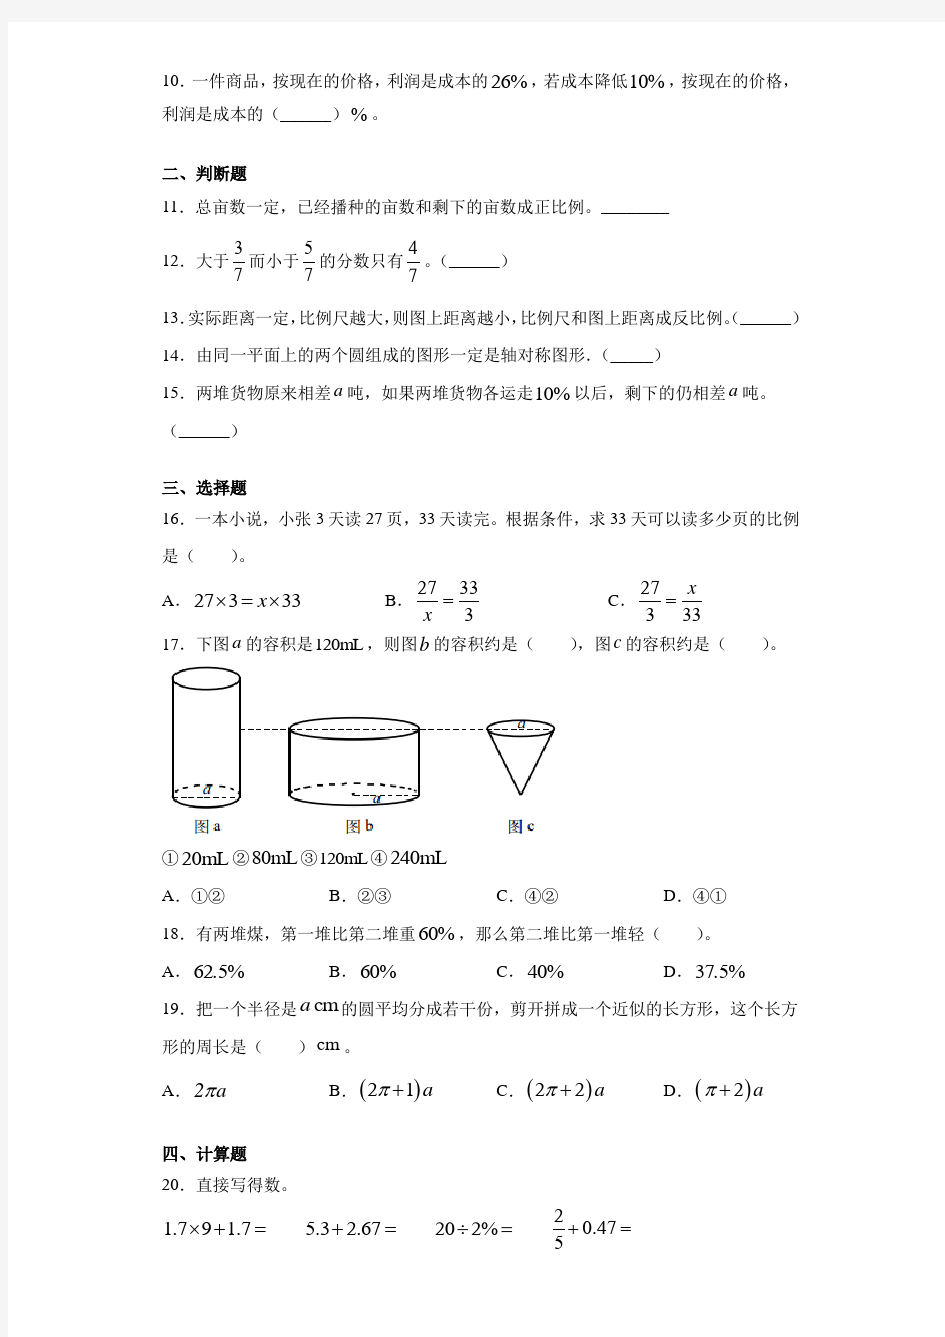 浙江省温州市2020年人教版小升初考试数学试卷